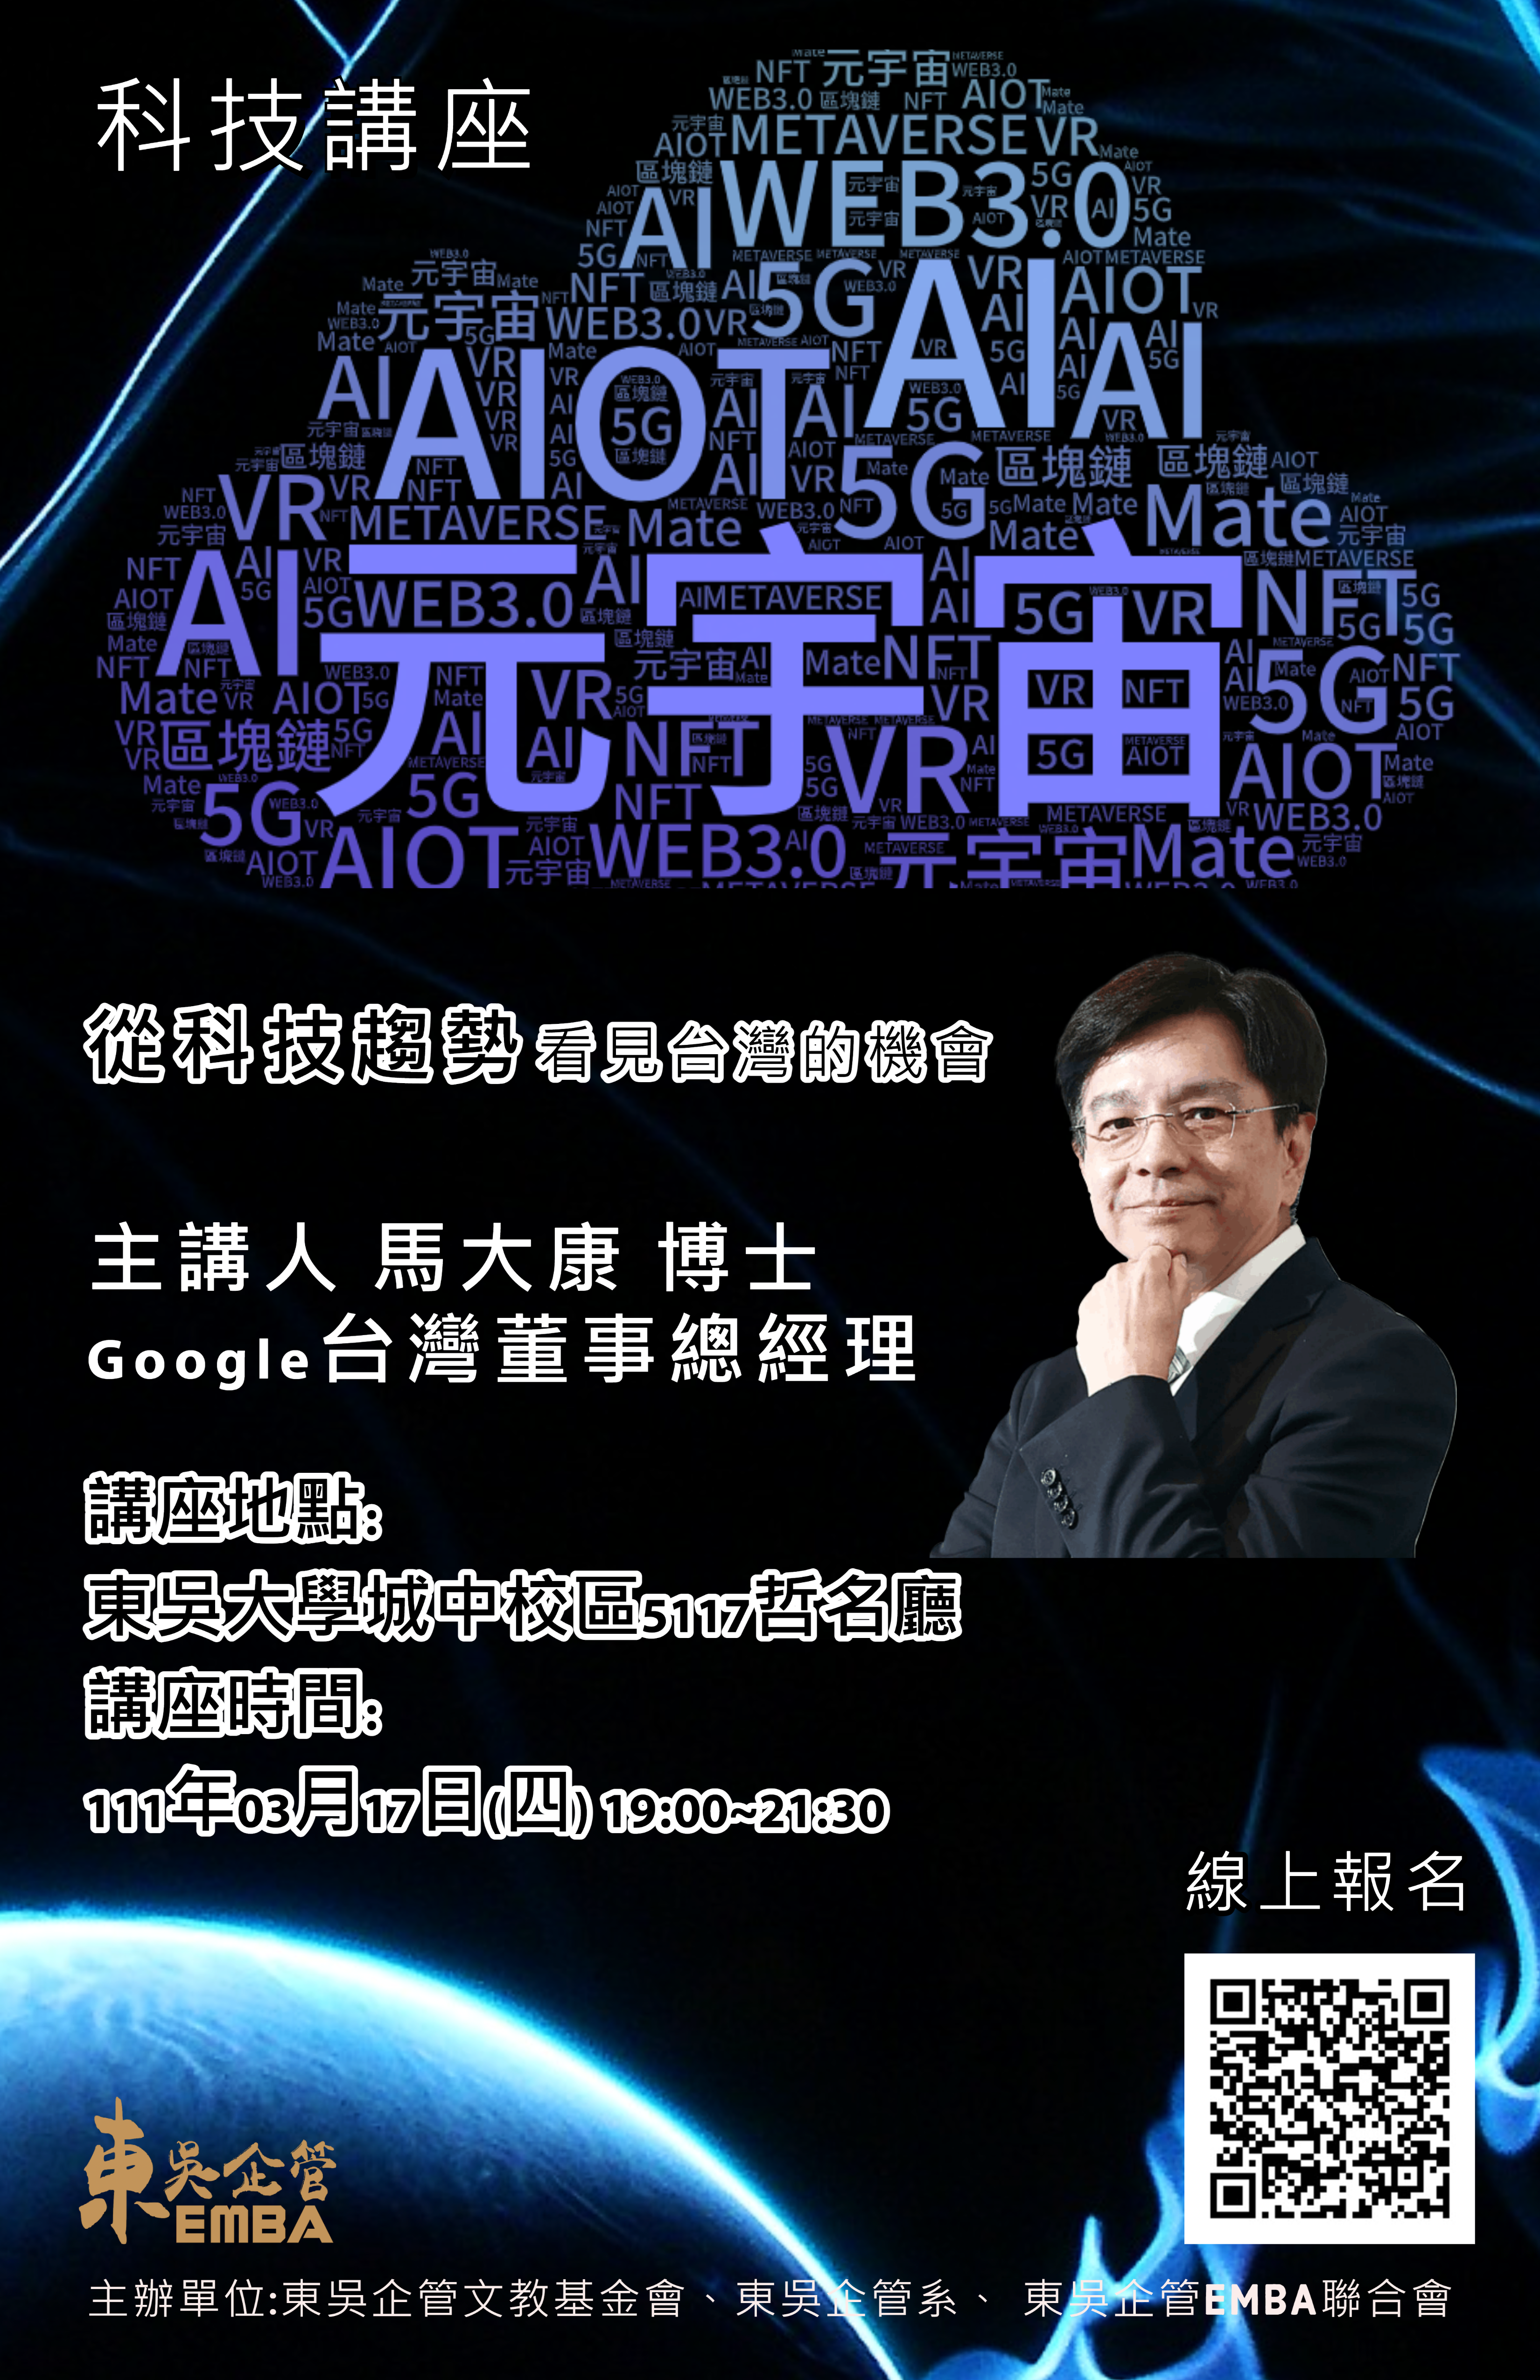 【講座】從科技趨勢看見台灣的機會AI + 5G + AIOT + Web 3.0 + 元宇宙